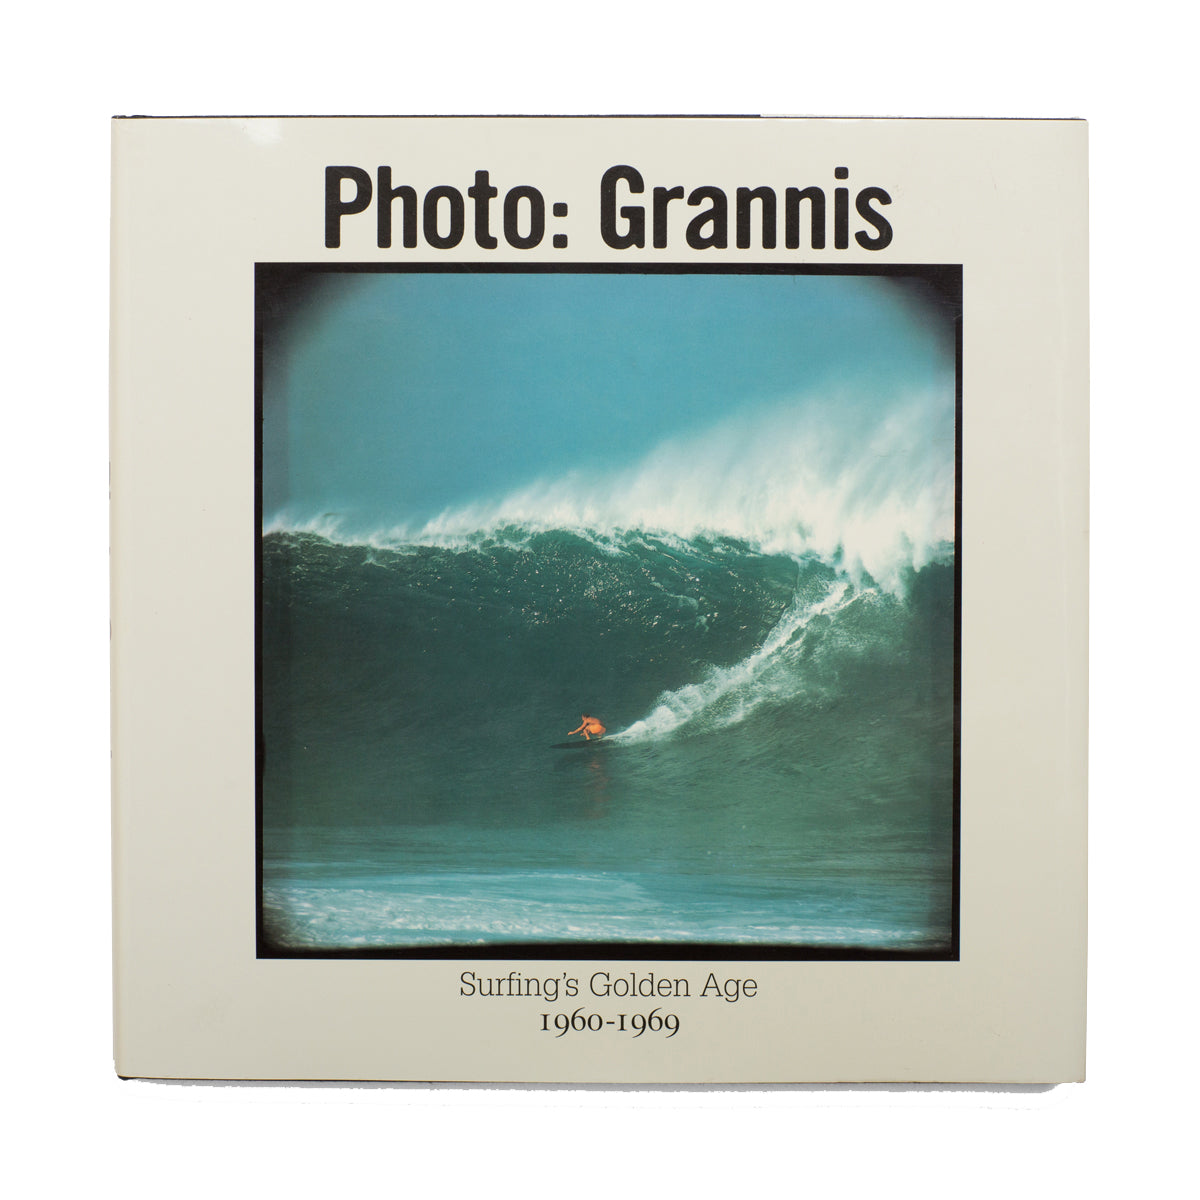 PHOTO: GRANNIS / SURFING'S GOLDEN AGE 1960-1969